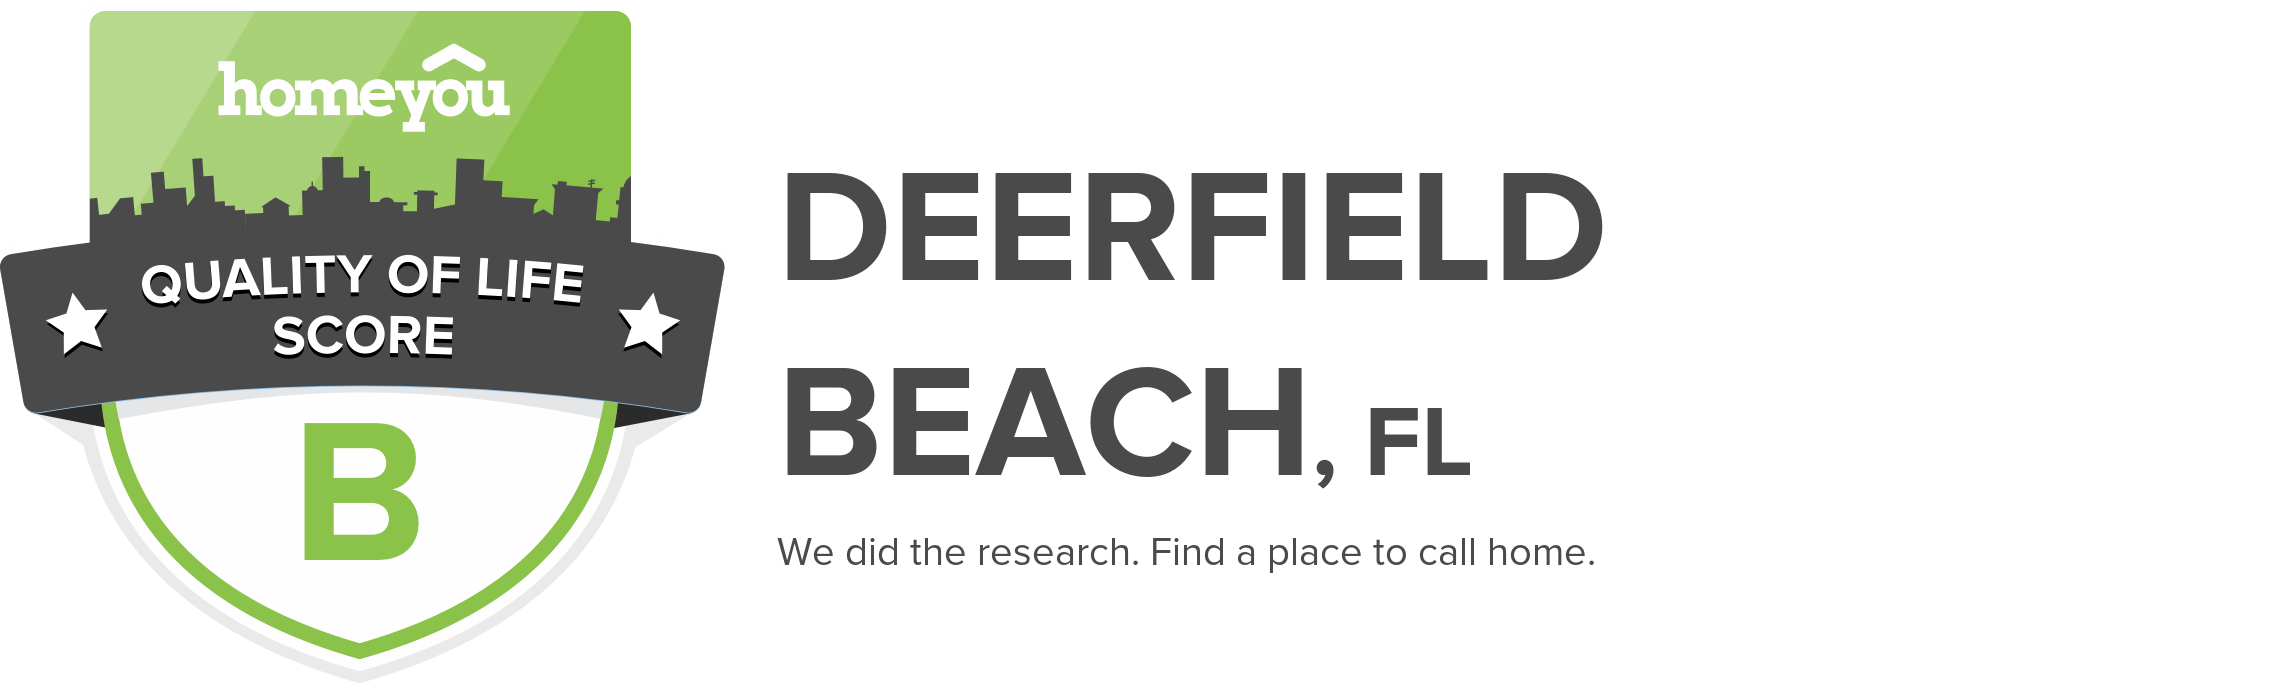 Deerfield Beach, FL